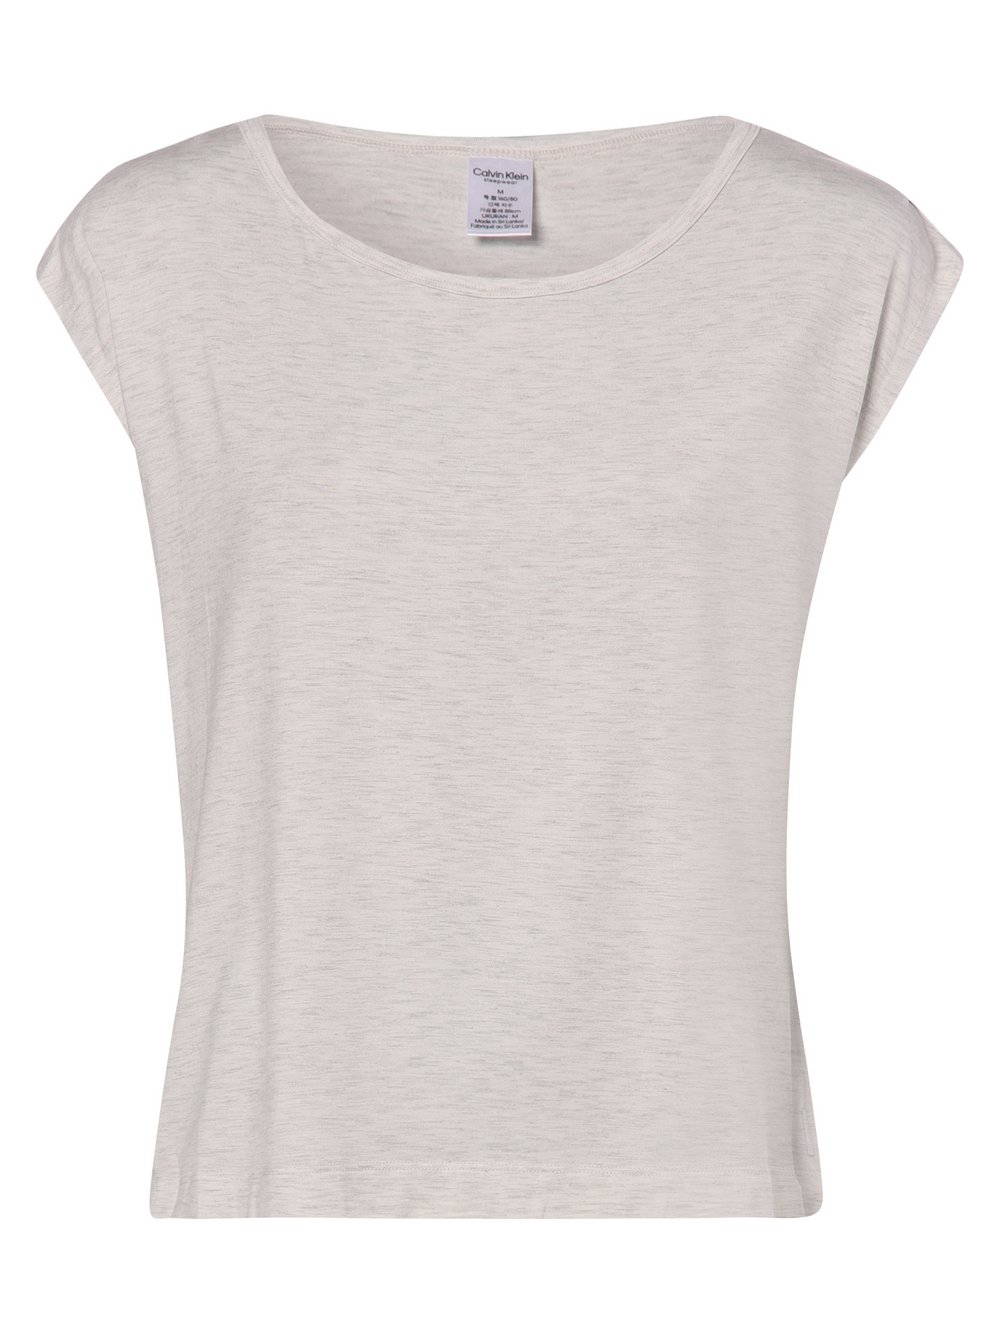 Calvin Klein - Damska koszulka od piżamy, szary|biały